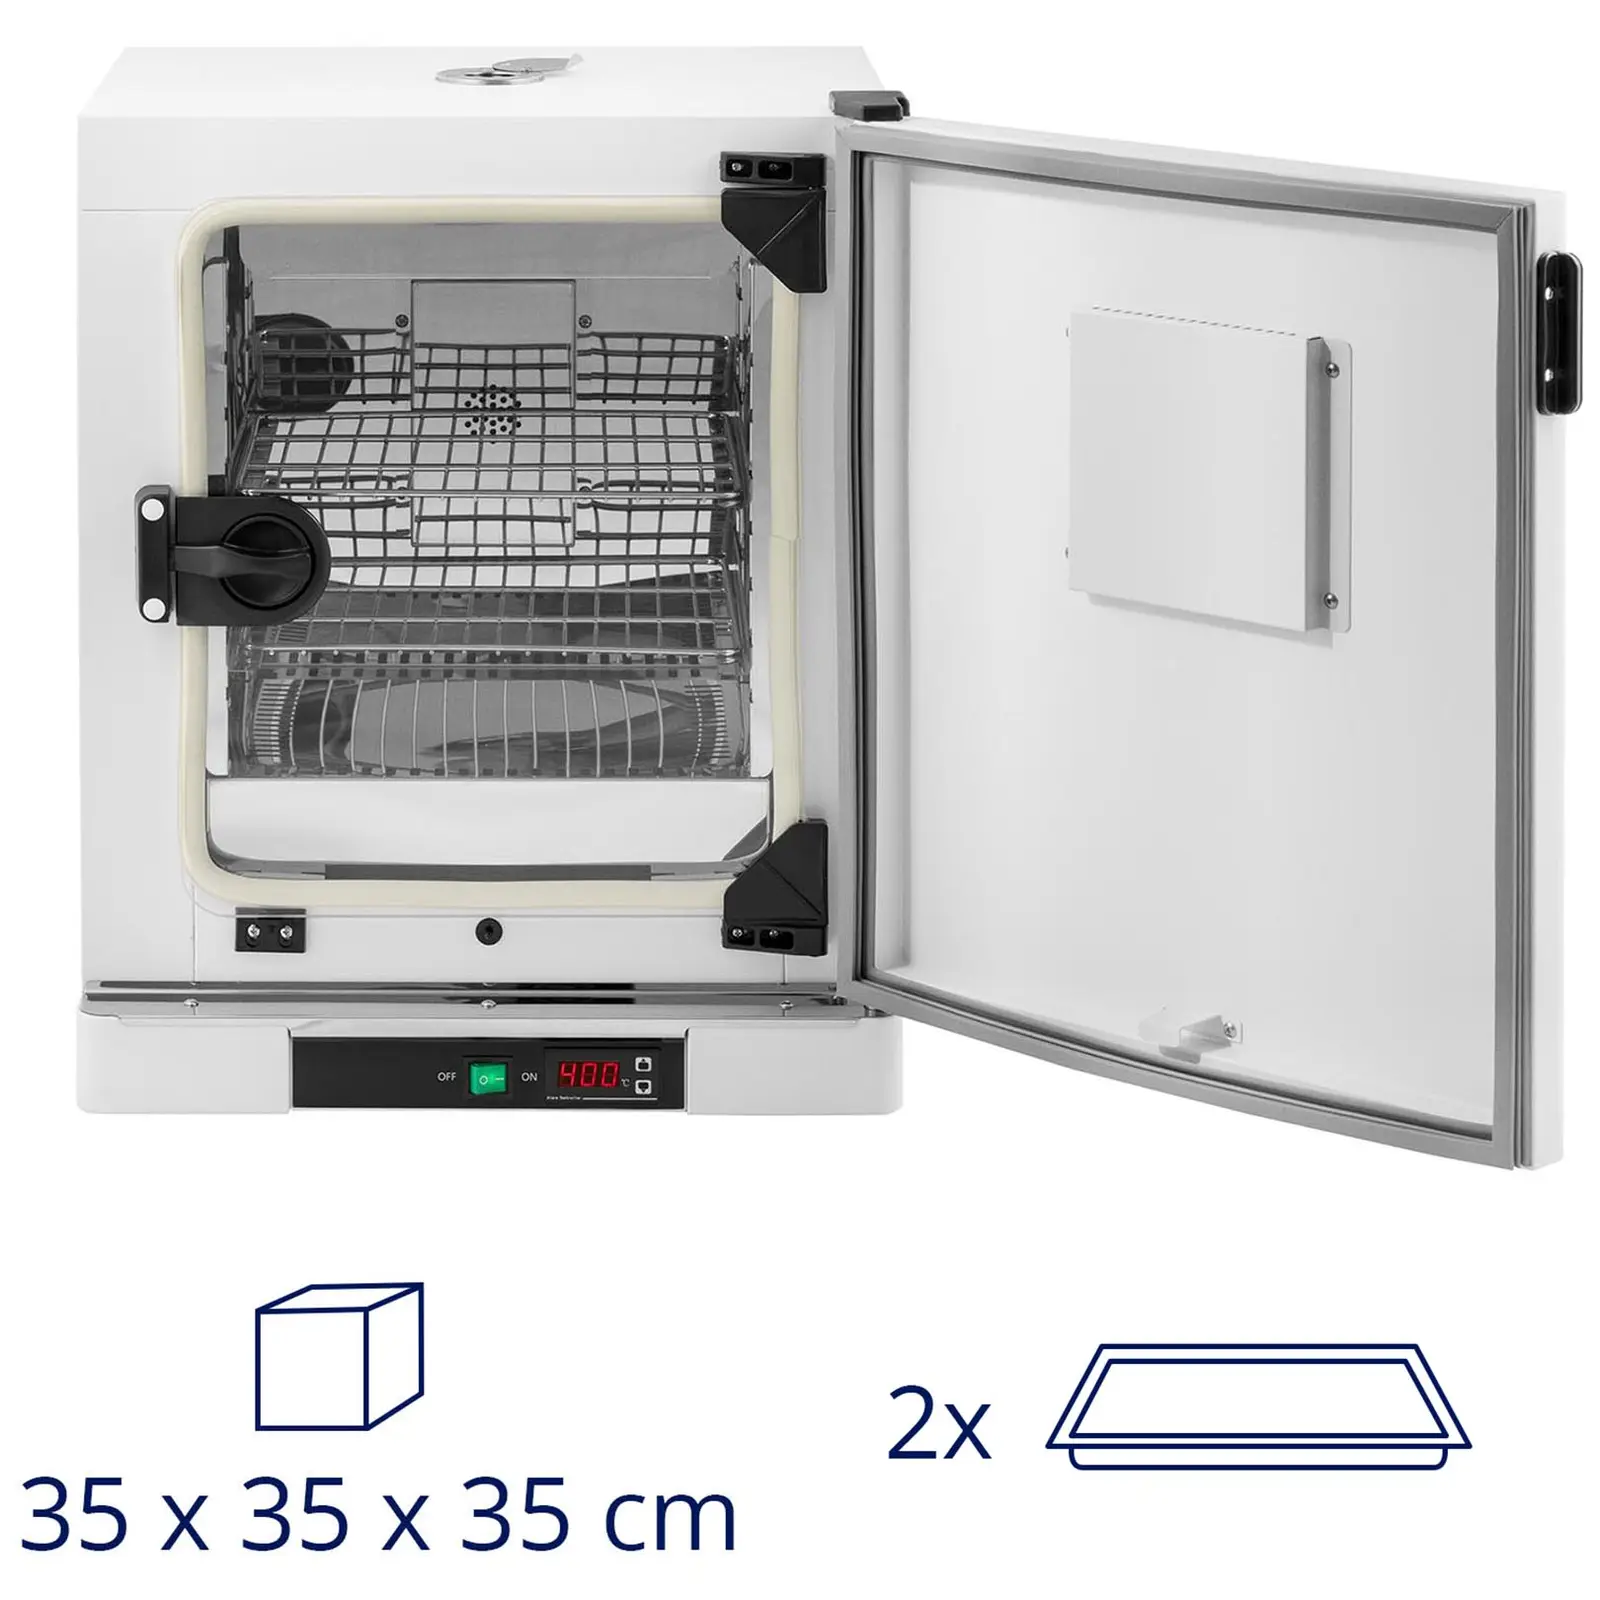 Inkubator laboratoryjny - do 70°C - 43 l - wymuszony obieg powietrza